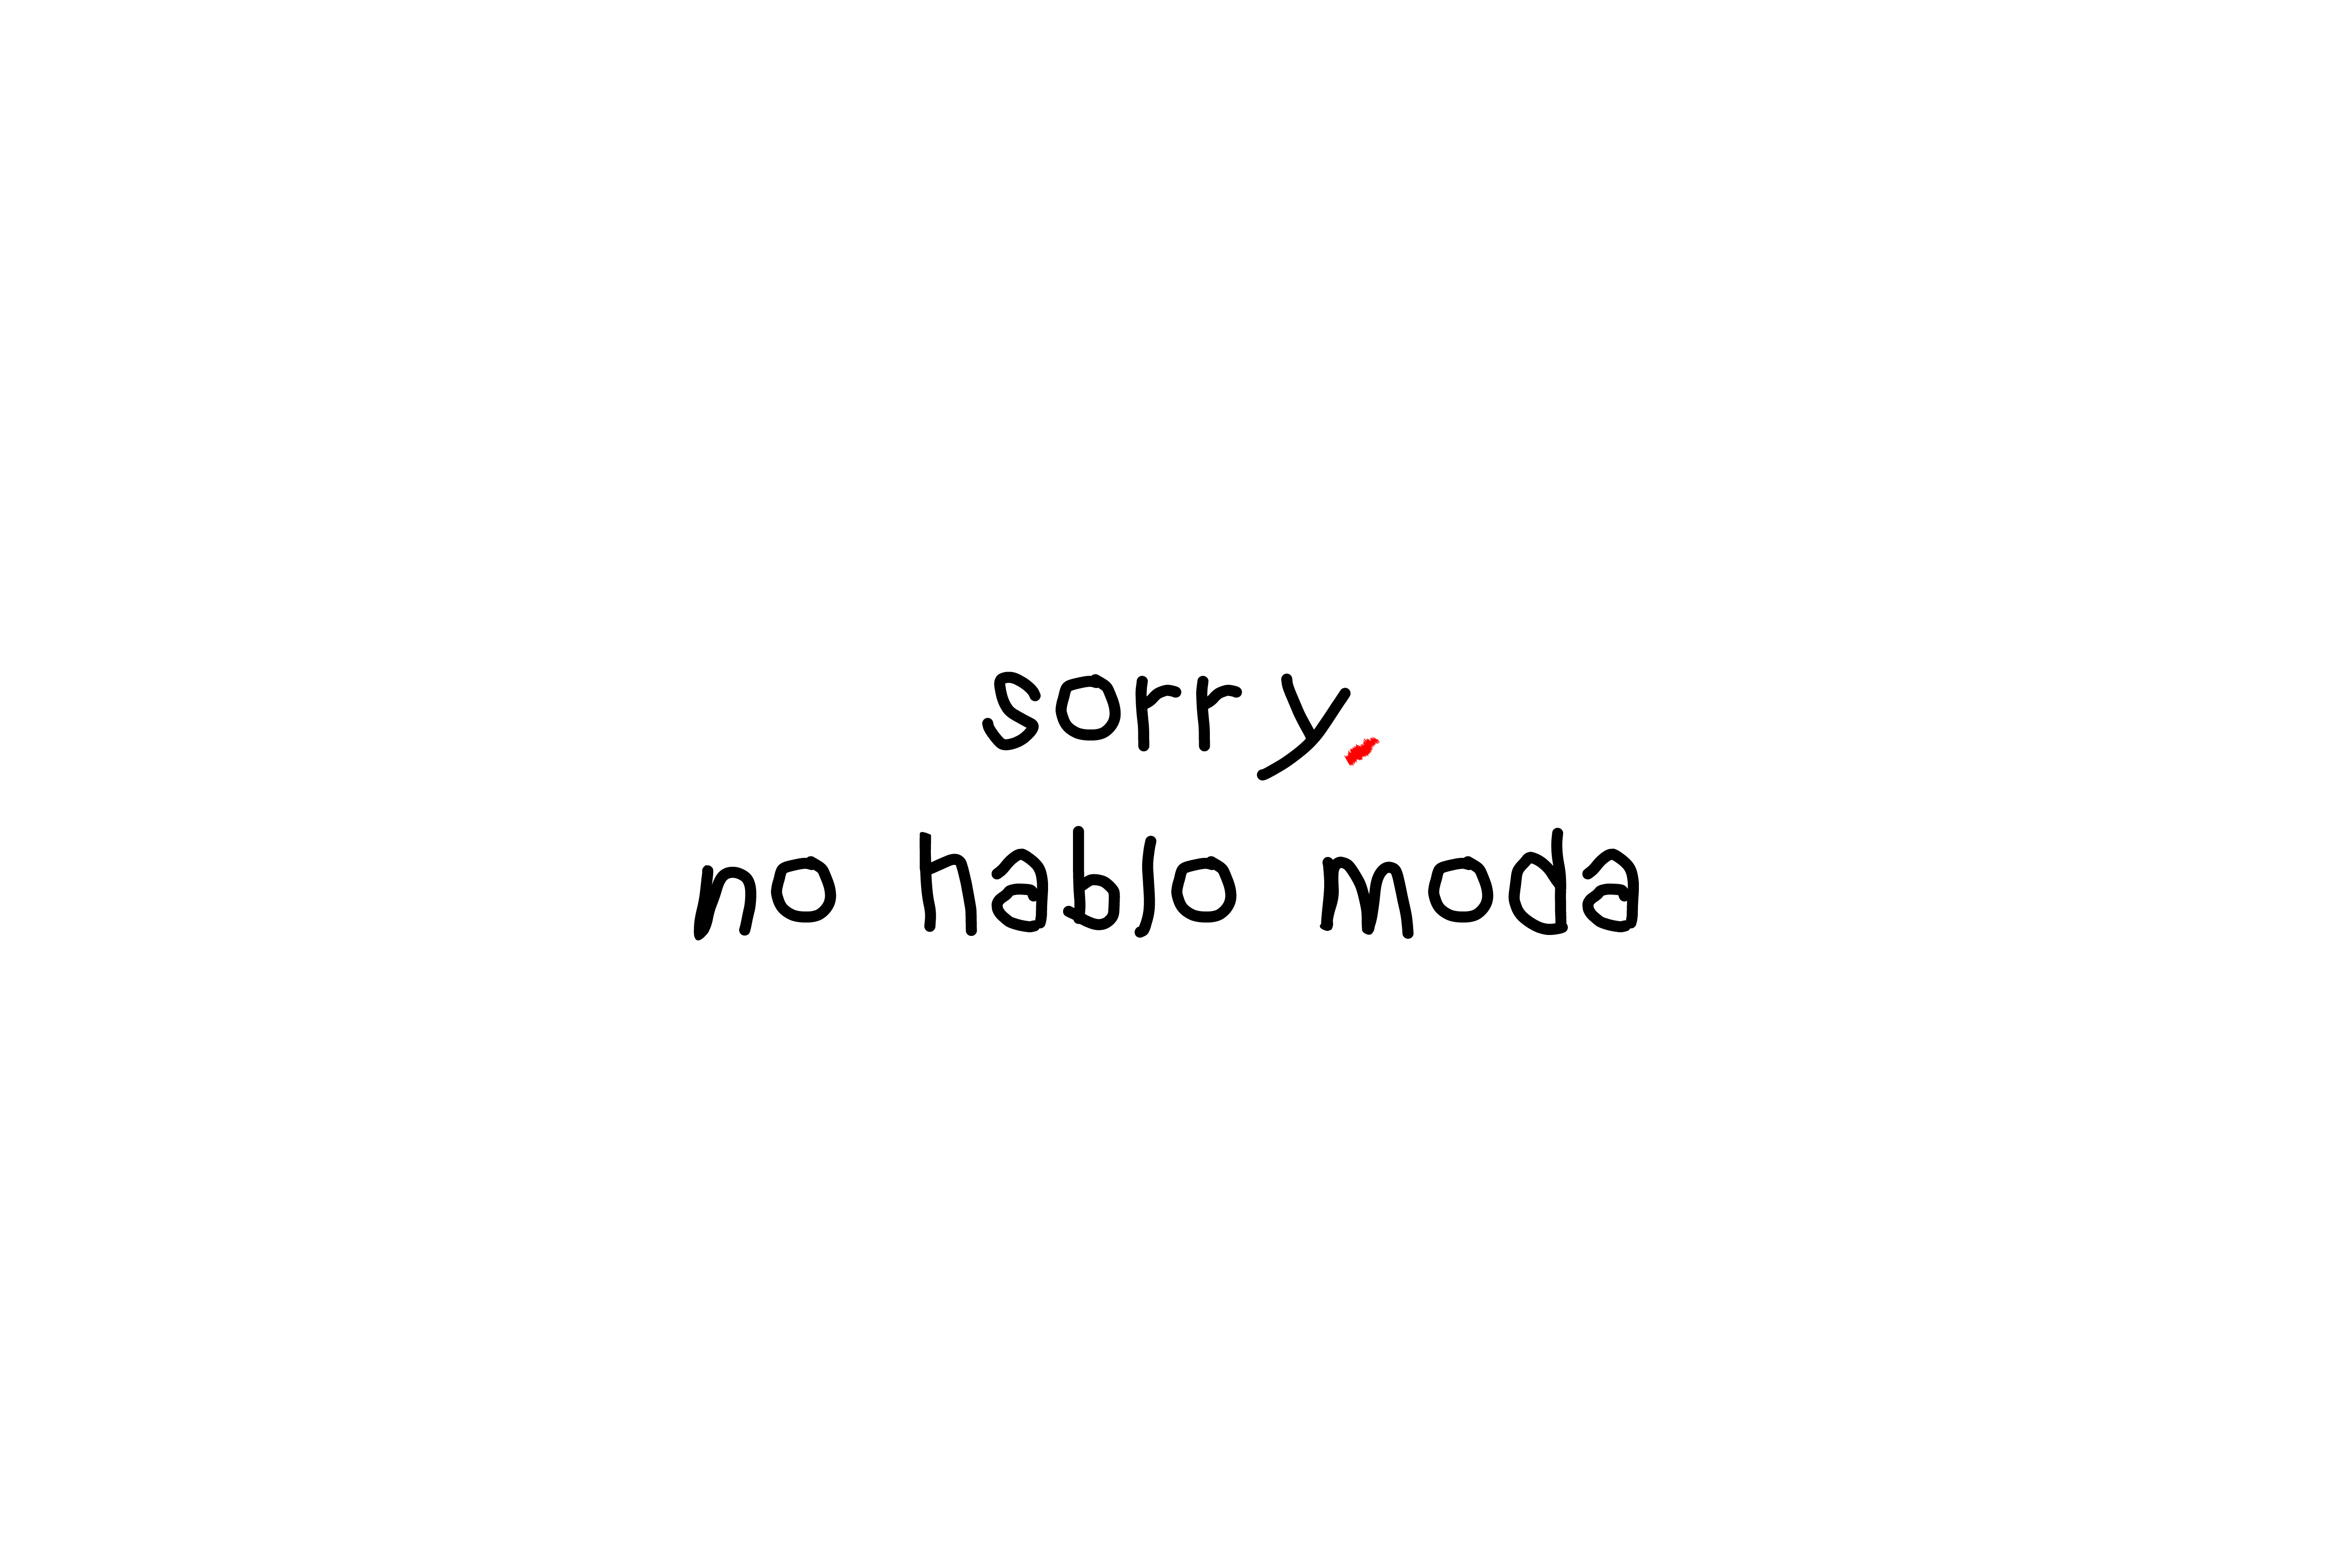 Sorry, no hablo moda